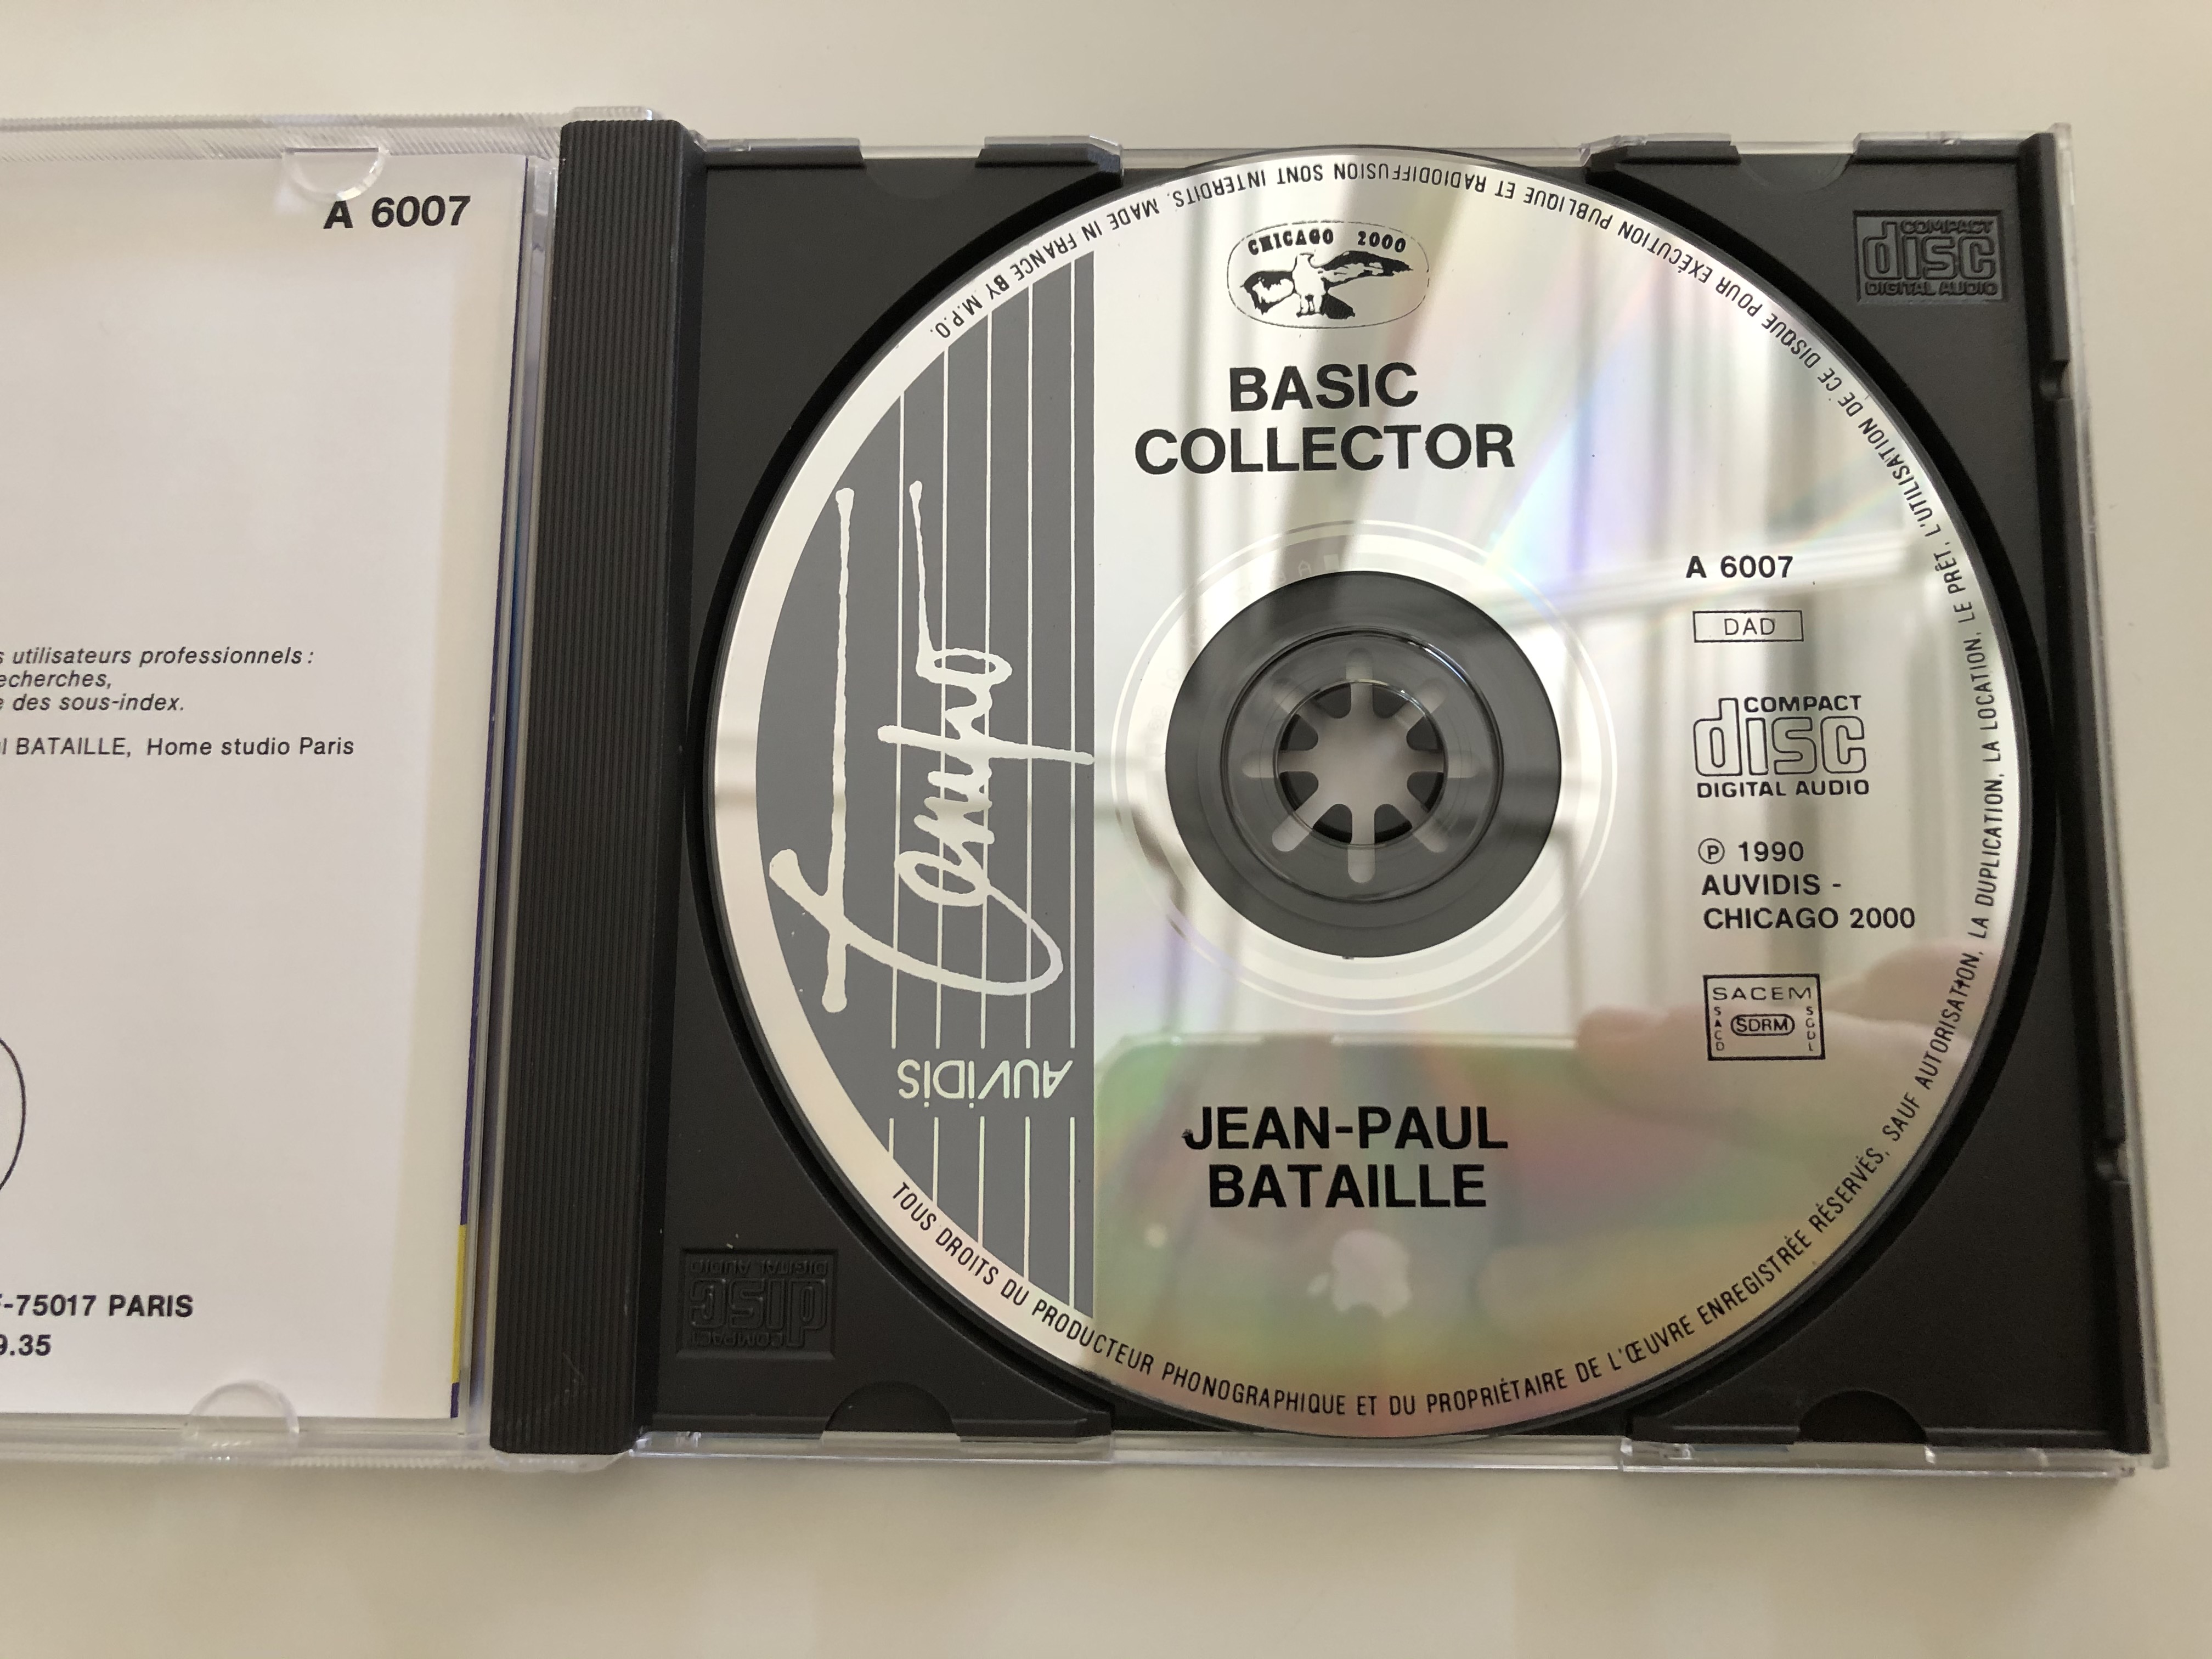 basic-collector-jean-paul-bataille-auvidis-audio-cd-1990-a-6007-4-.jpg